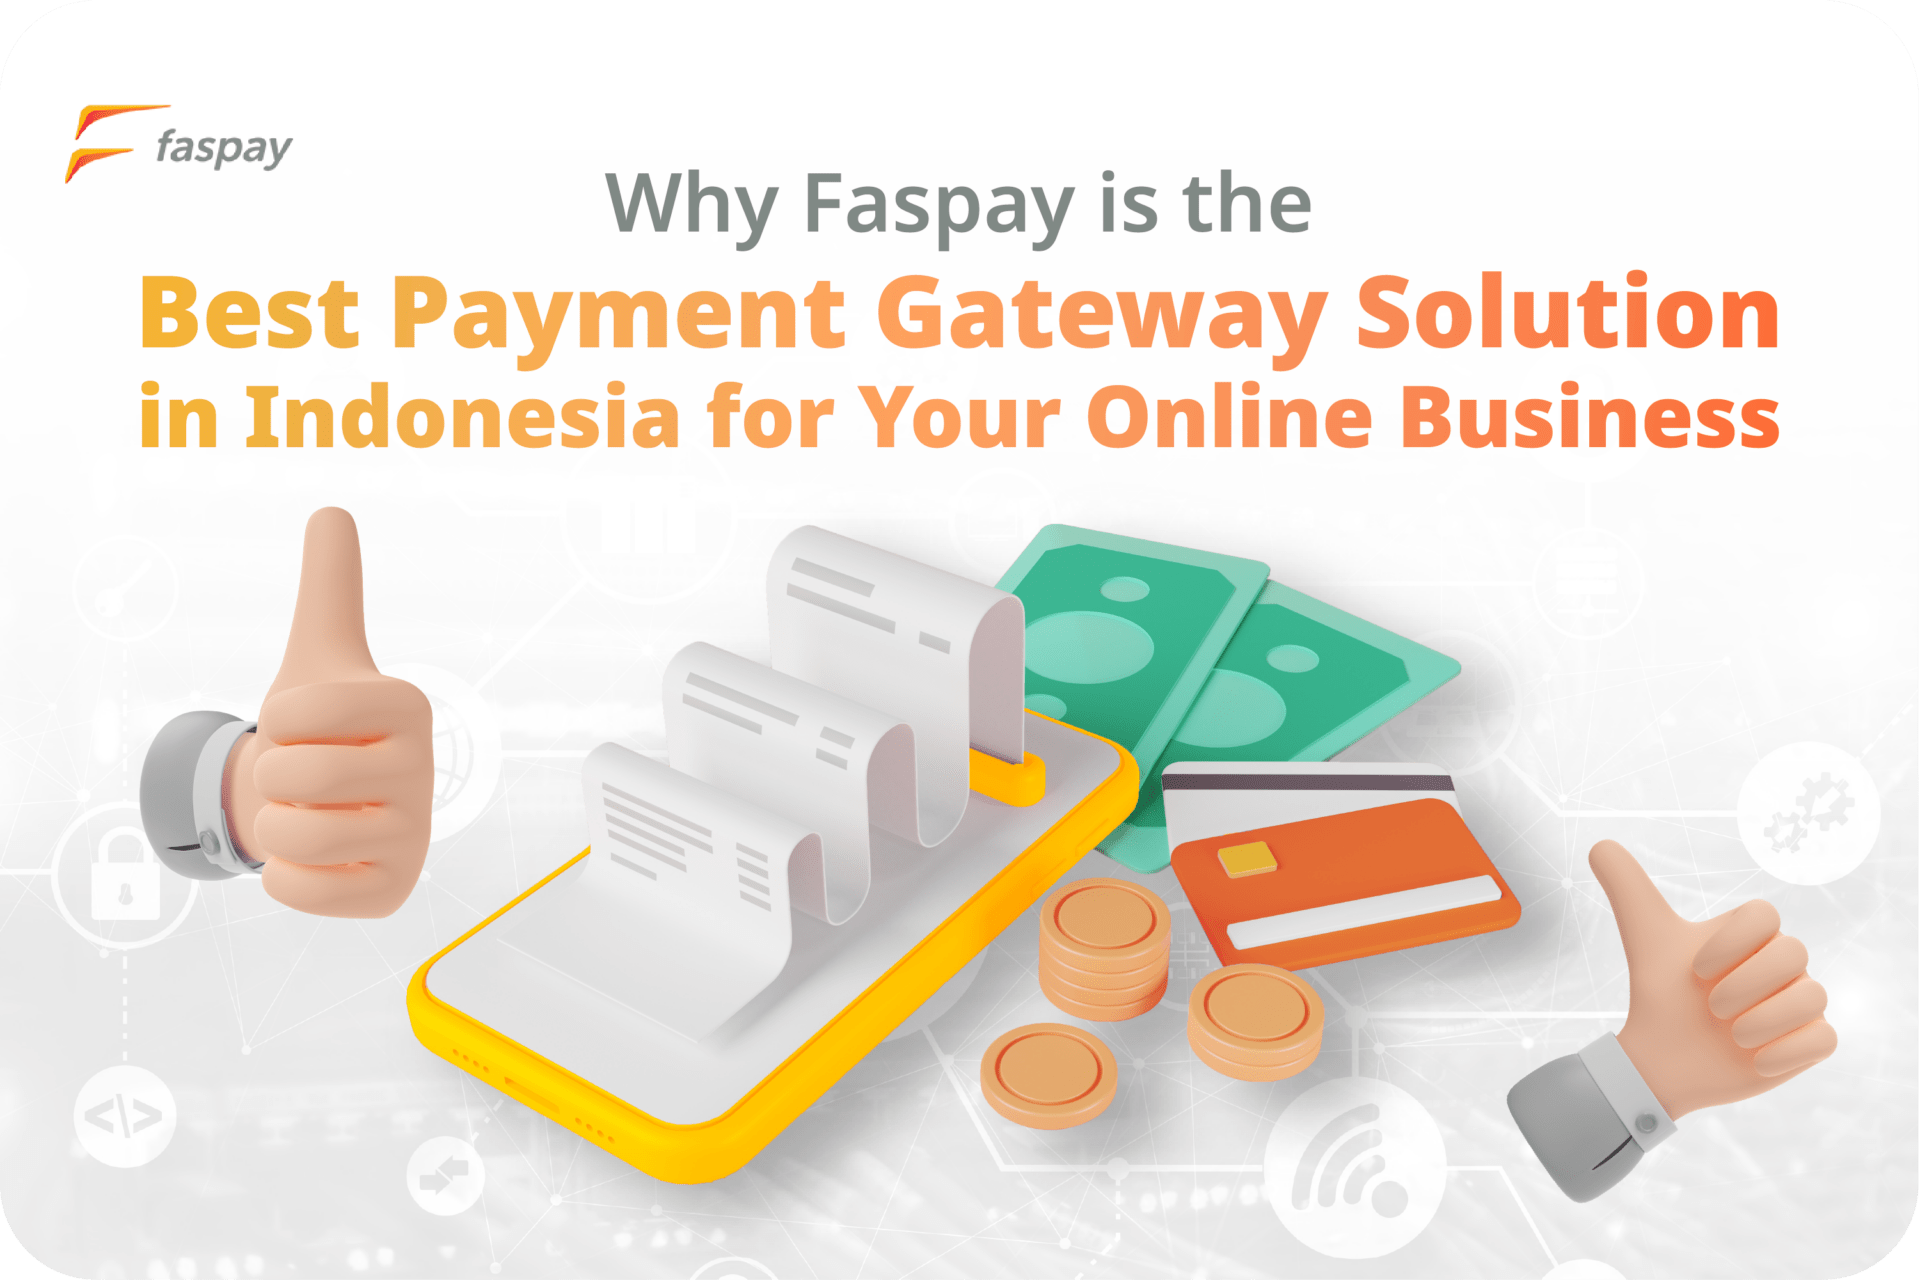 Best Payment Gateway